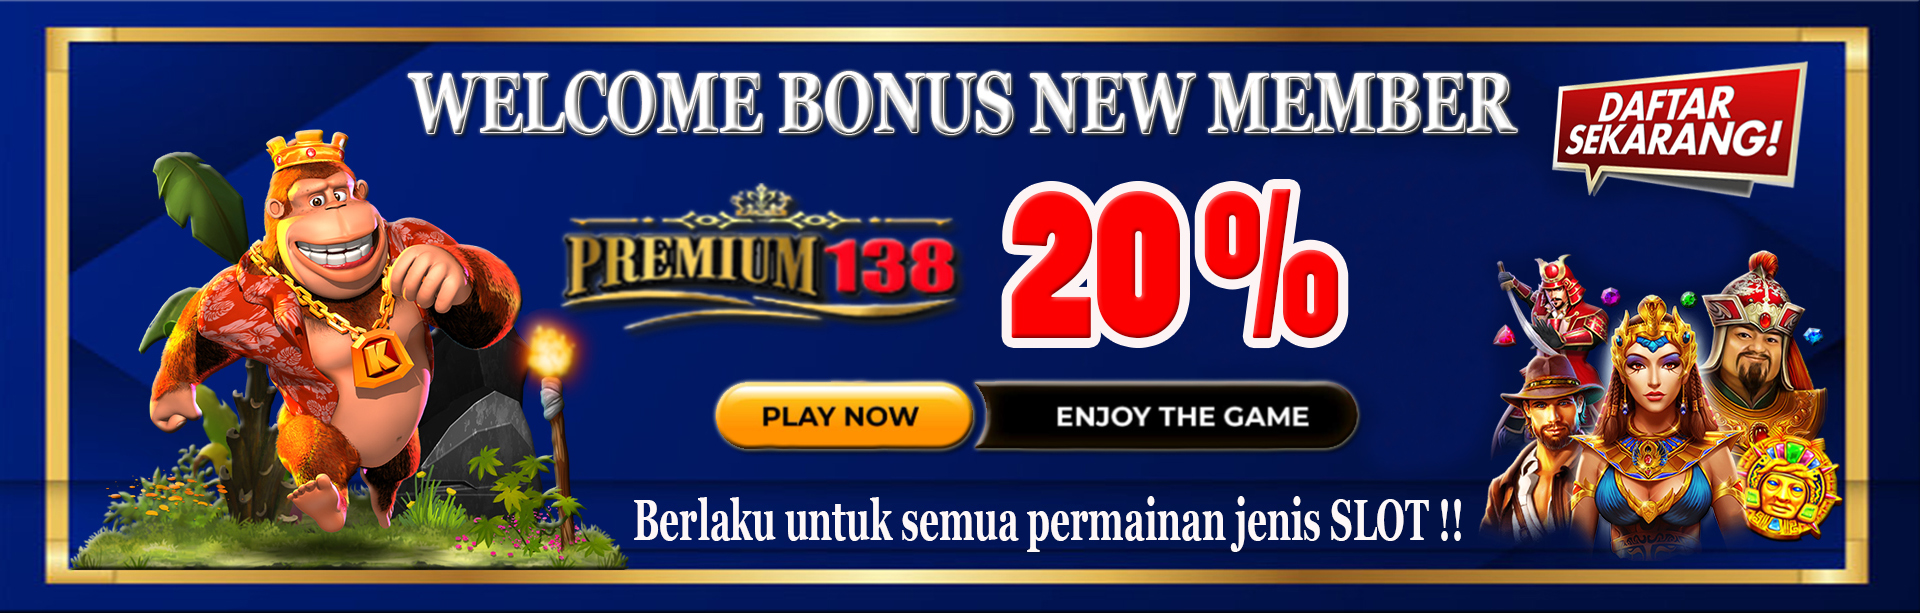 Premium138 Slot Bonus New Member 20%